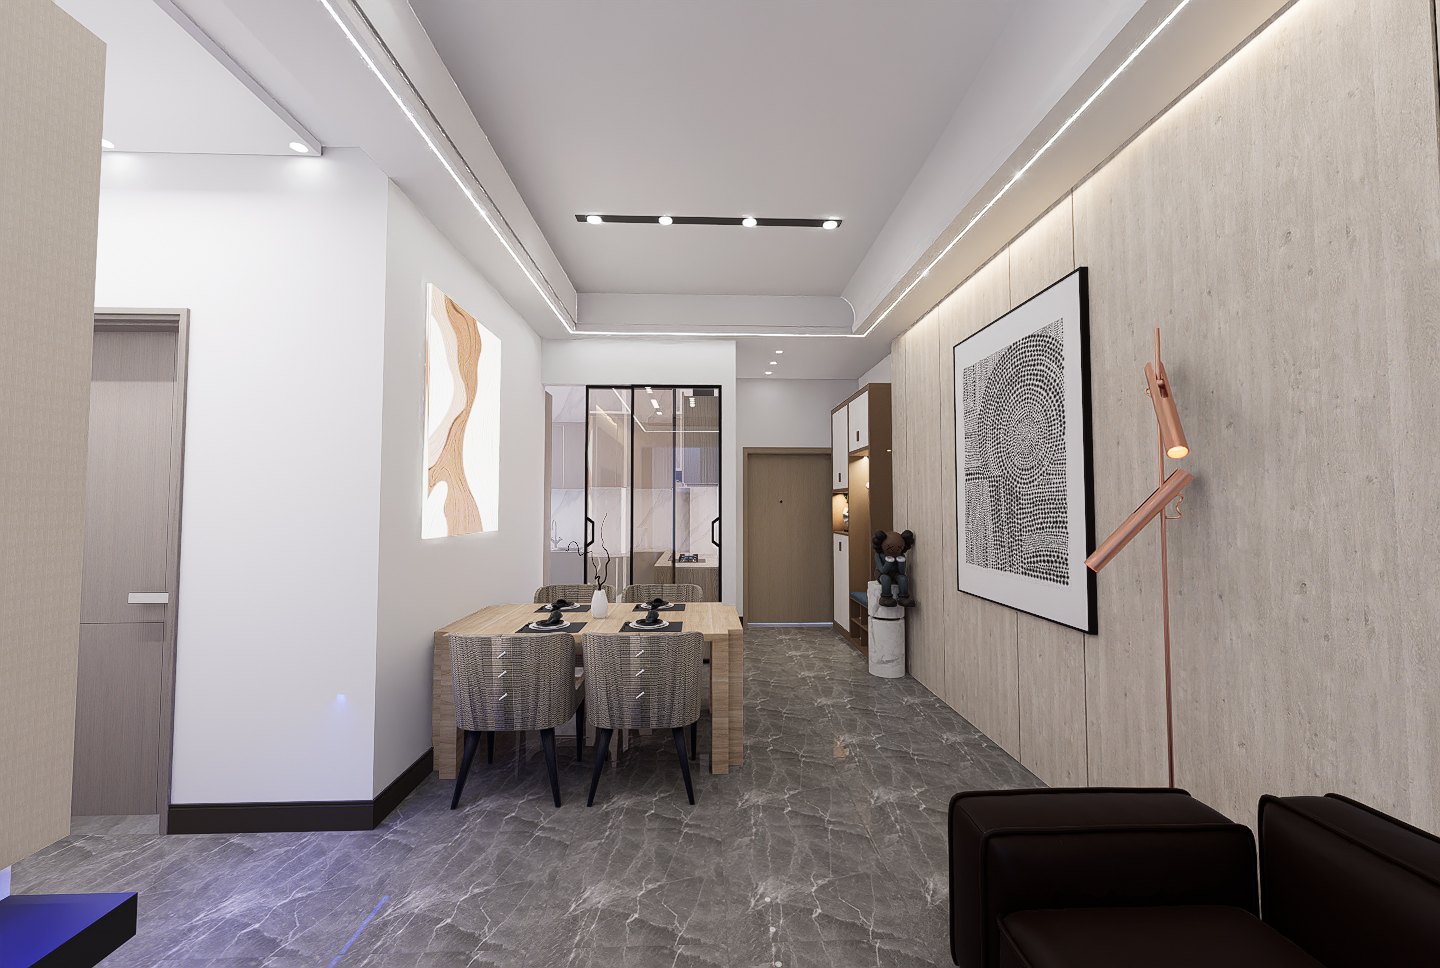 室内空间设计三房一厅简洁素颜风格效果图施工图